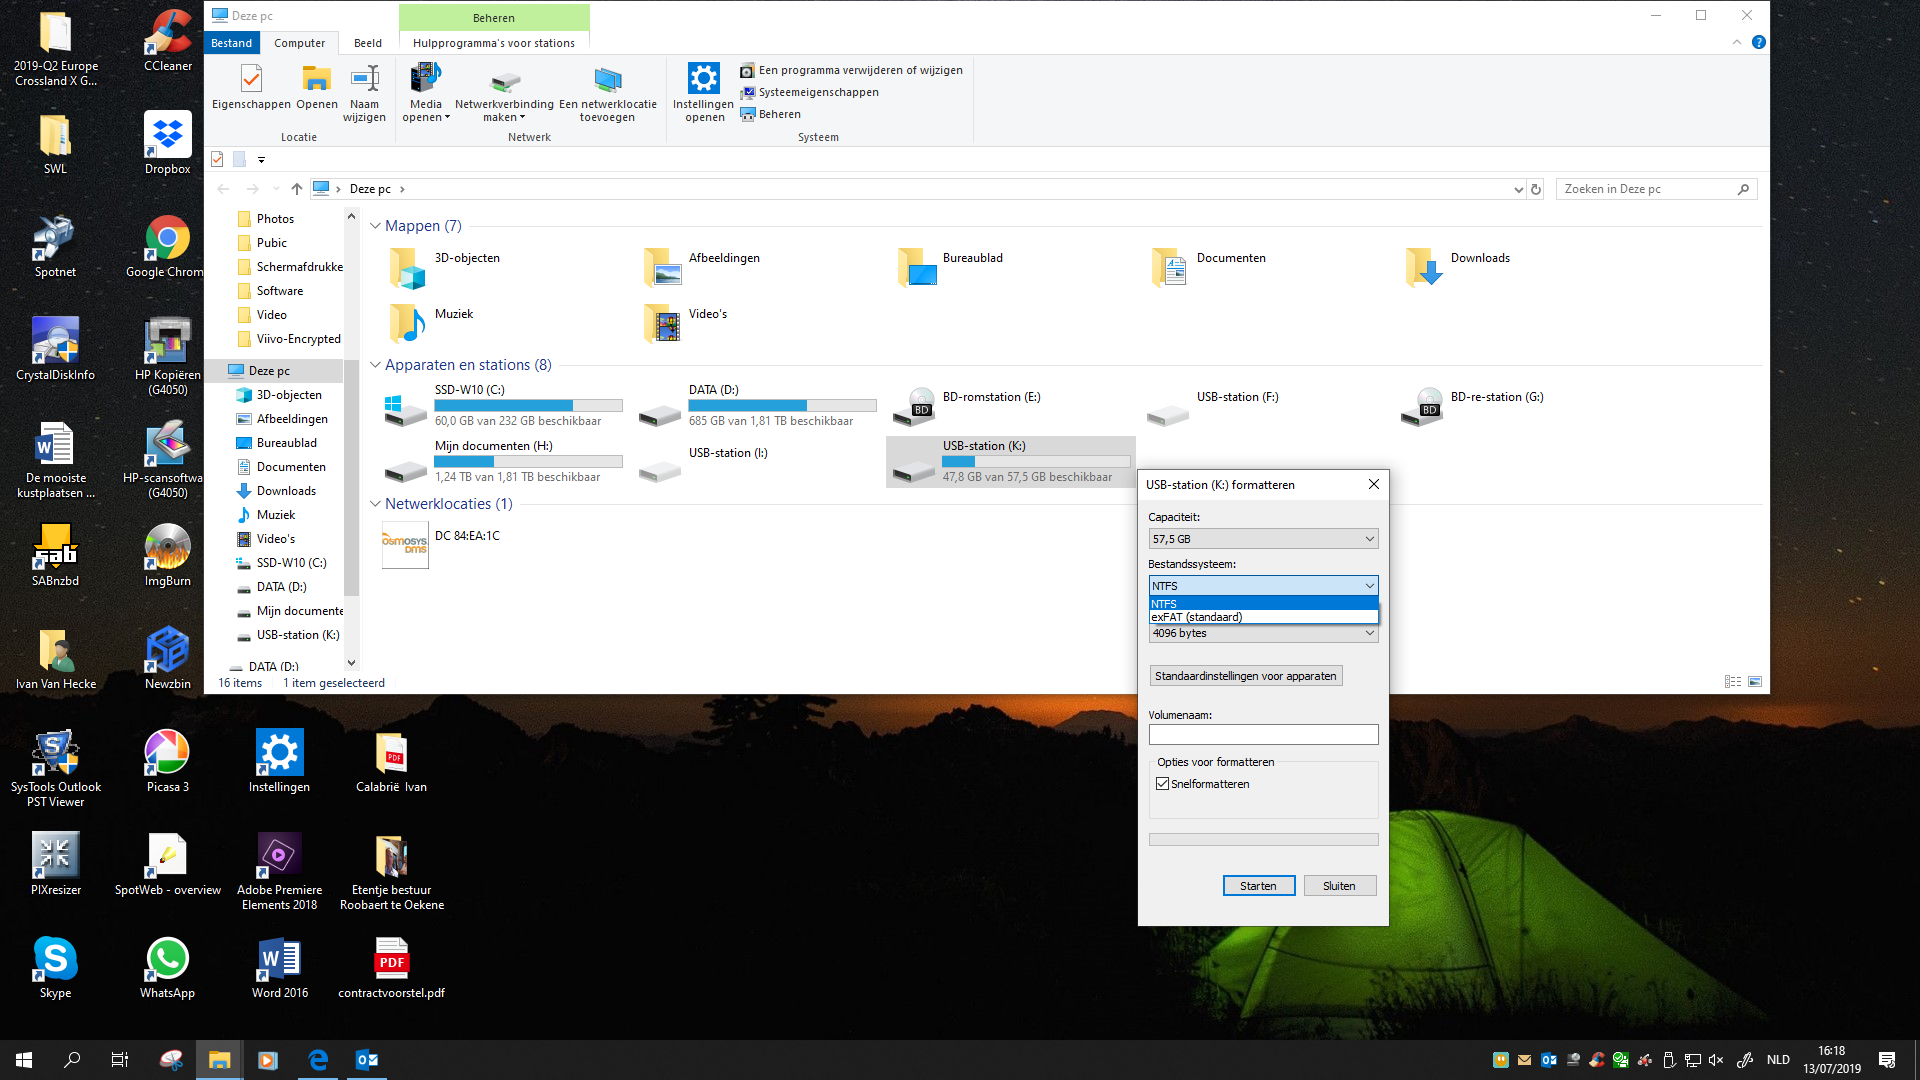 Heerlijk Bedankt Eigenlijk Windows 10 - USB stick formateren in FAT 32 | Computerforum PcTuts.be